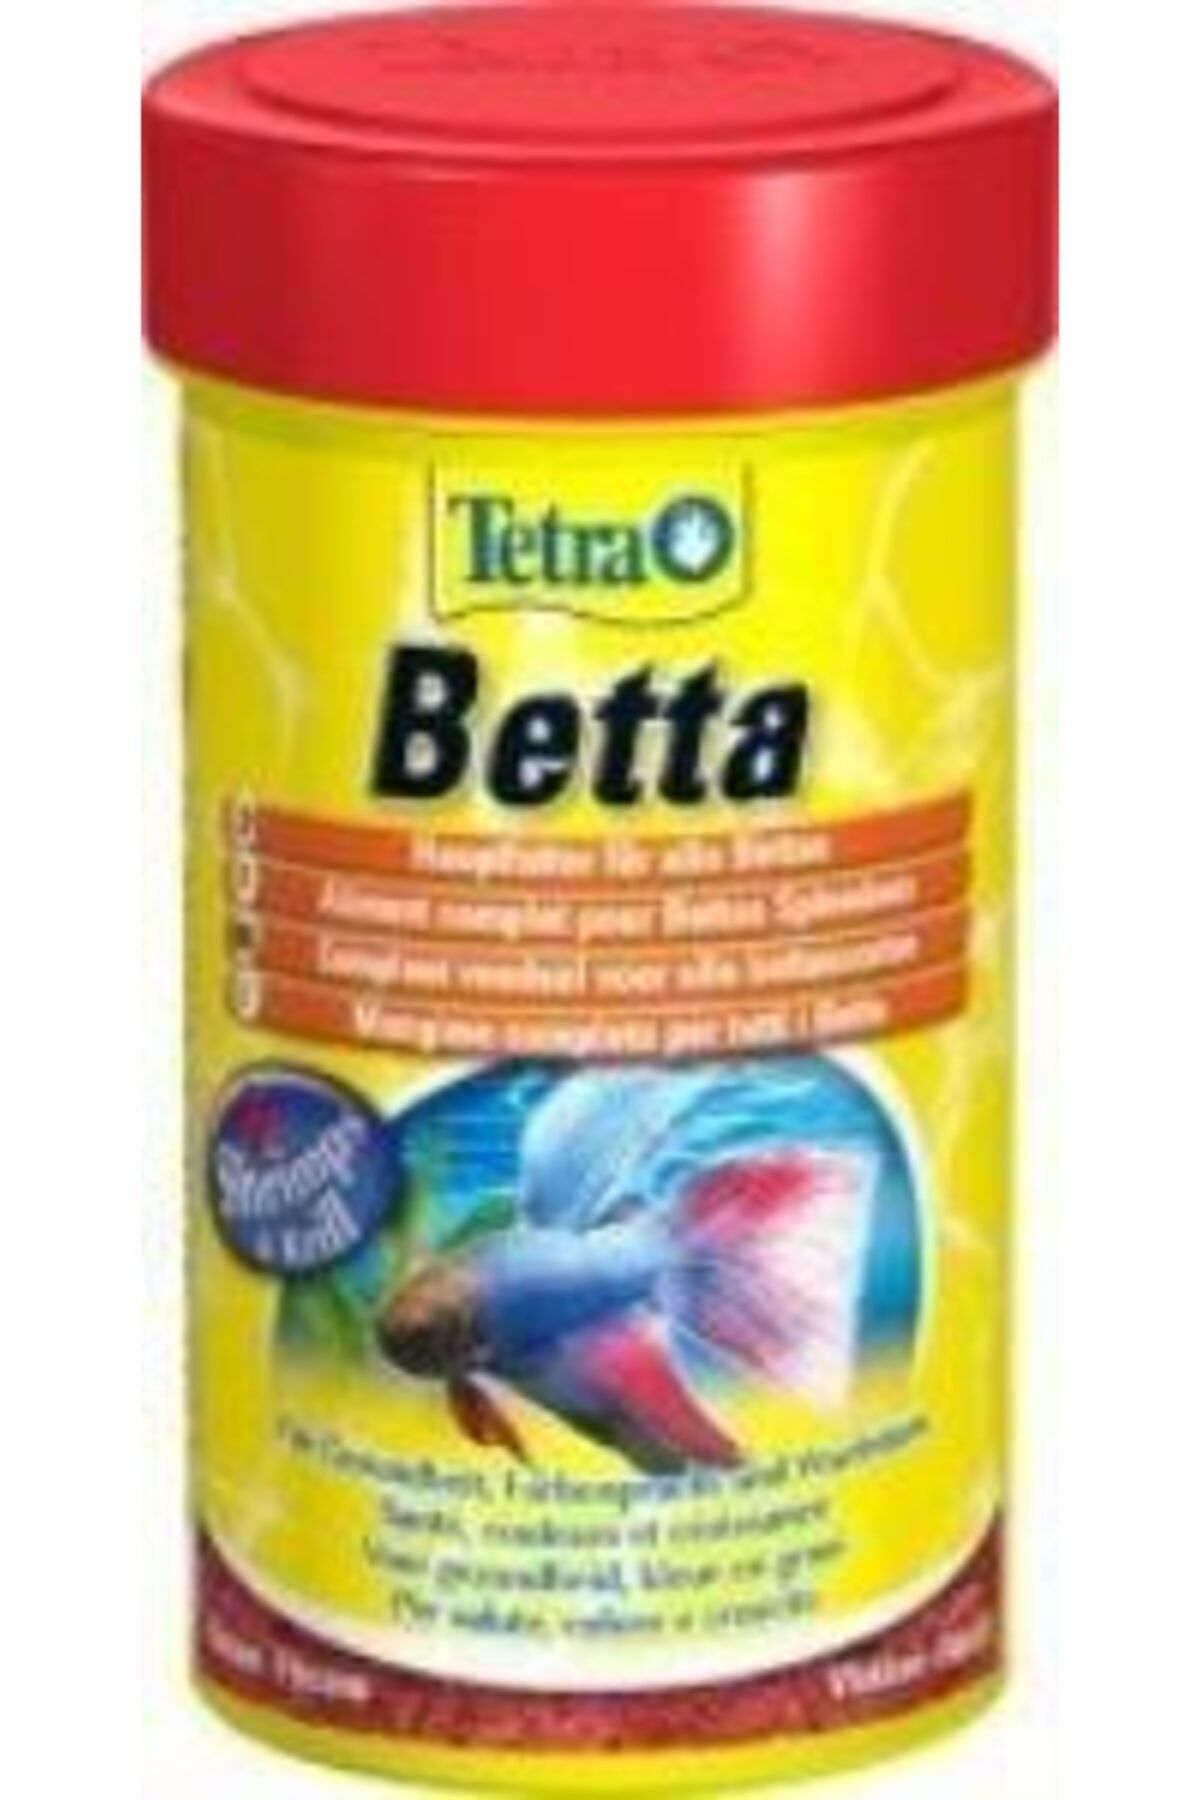 Tetra Betta Beta Balığı Yemi 100ml 27gr